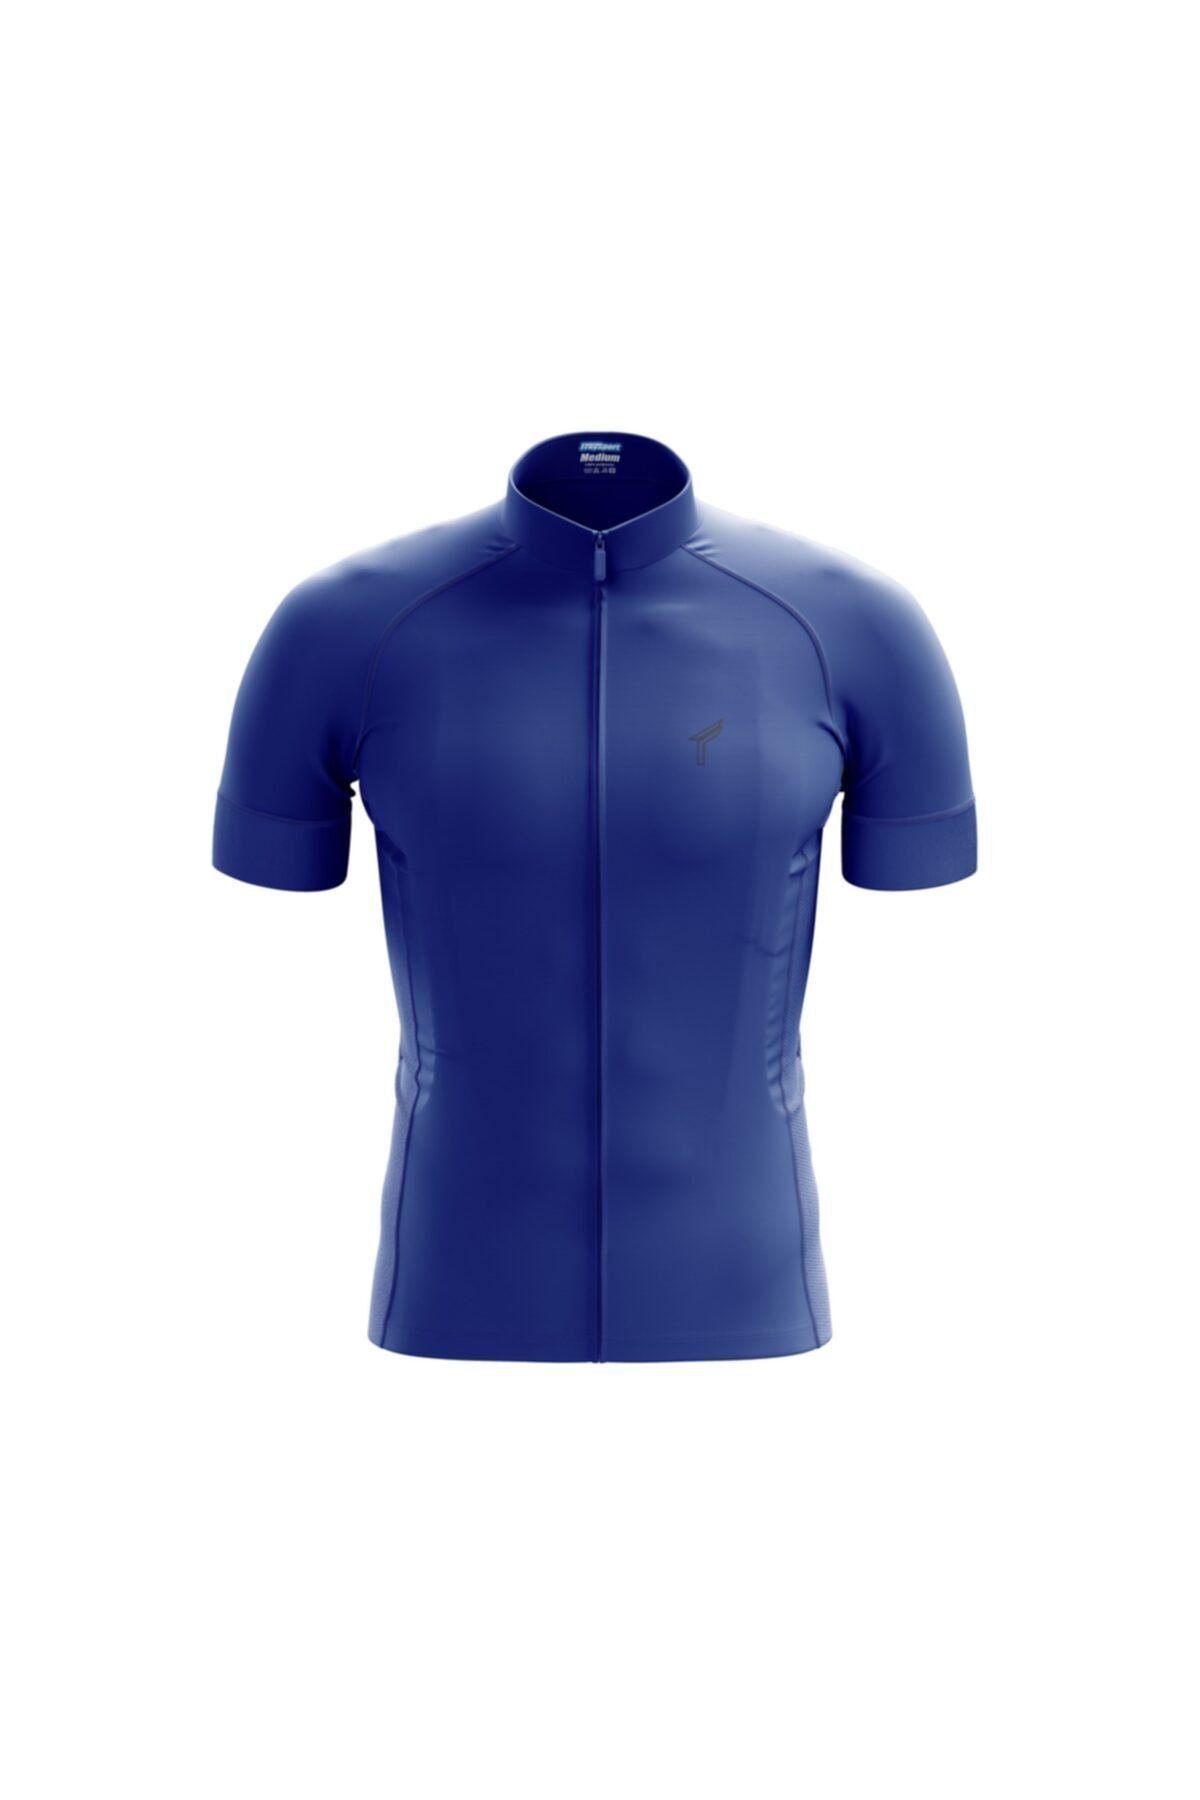 Freysport Saks Mavi Yazlık Kısa Kollu Bisiklet Forması